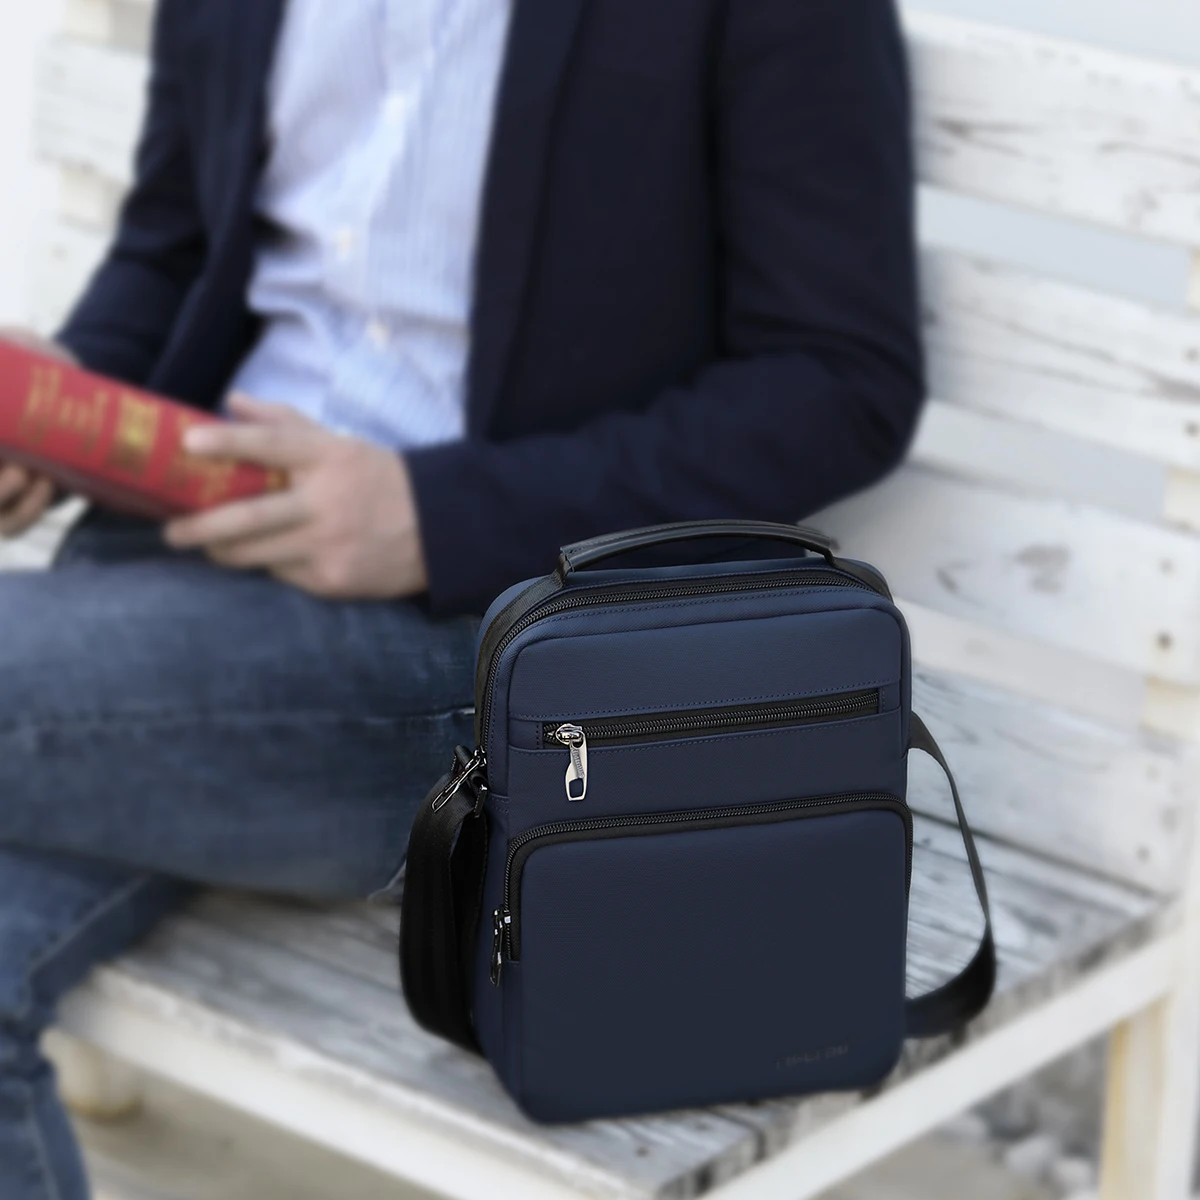 Lifetime Warranty Men Shoulder Bag 9.7 inch Ipad Bags Waterproof Lightweight Business Travel Mini Sling Bag HandBag Messager Bag images - 6